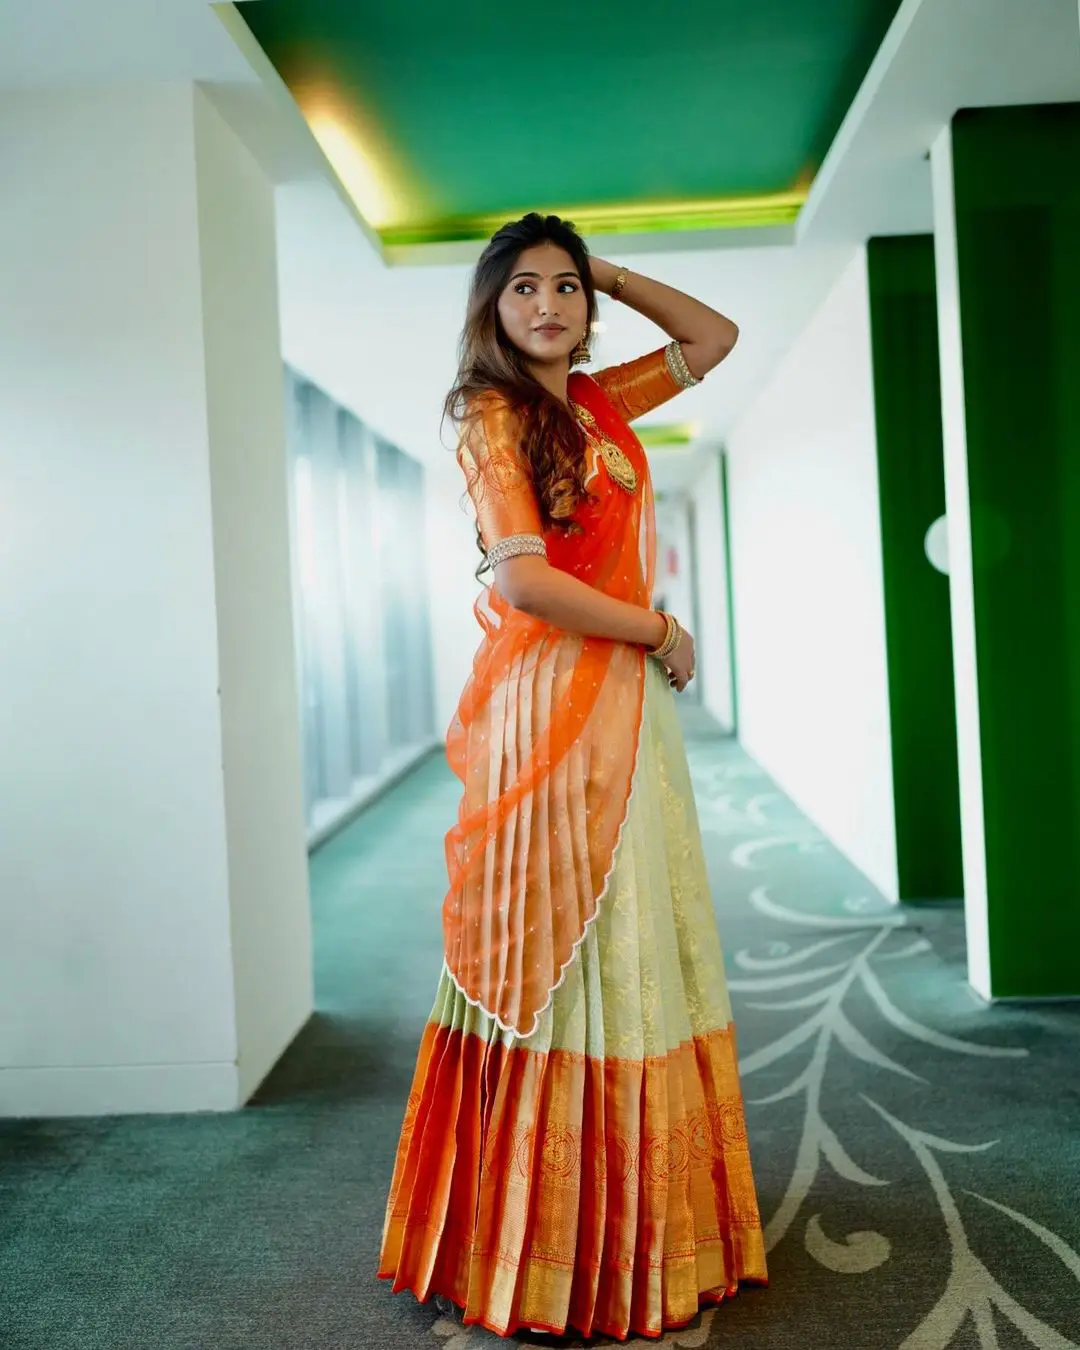 Pranavi Manukonda gorgeous looks in half saree pic2